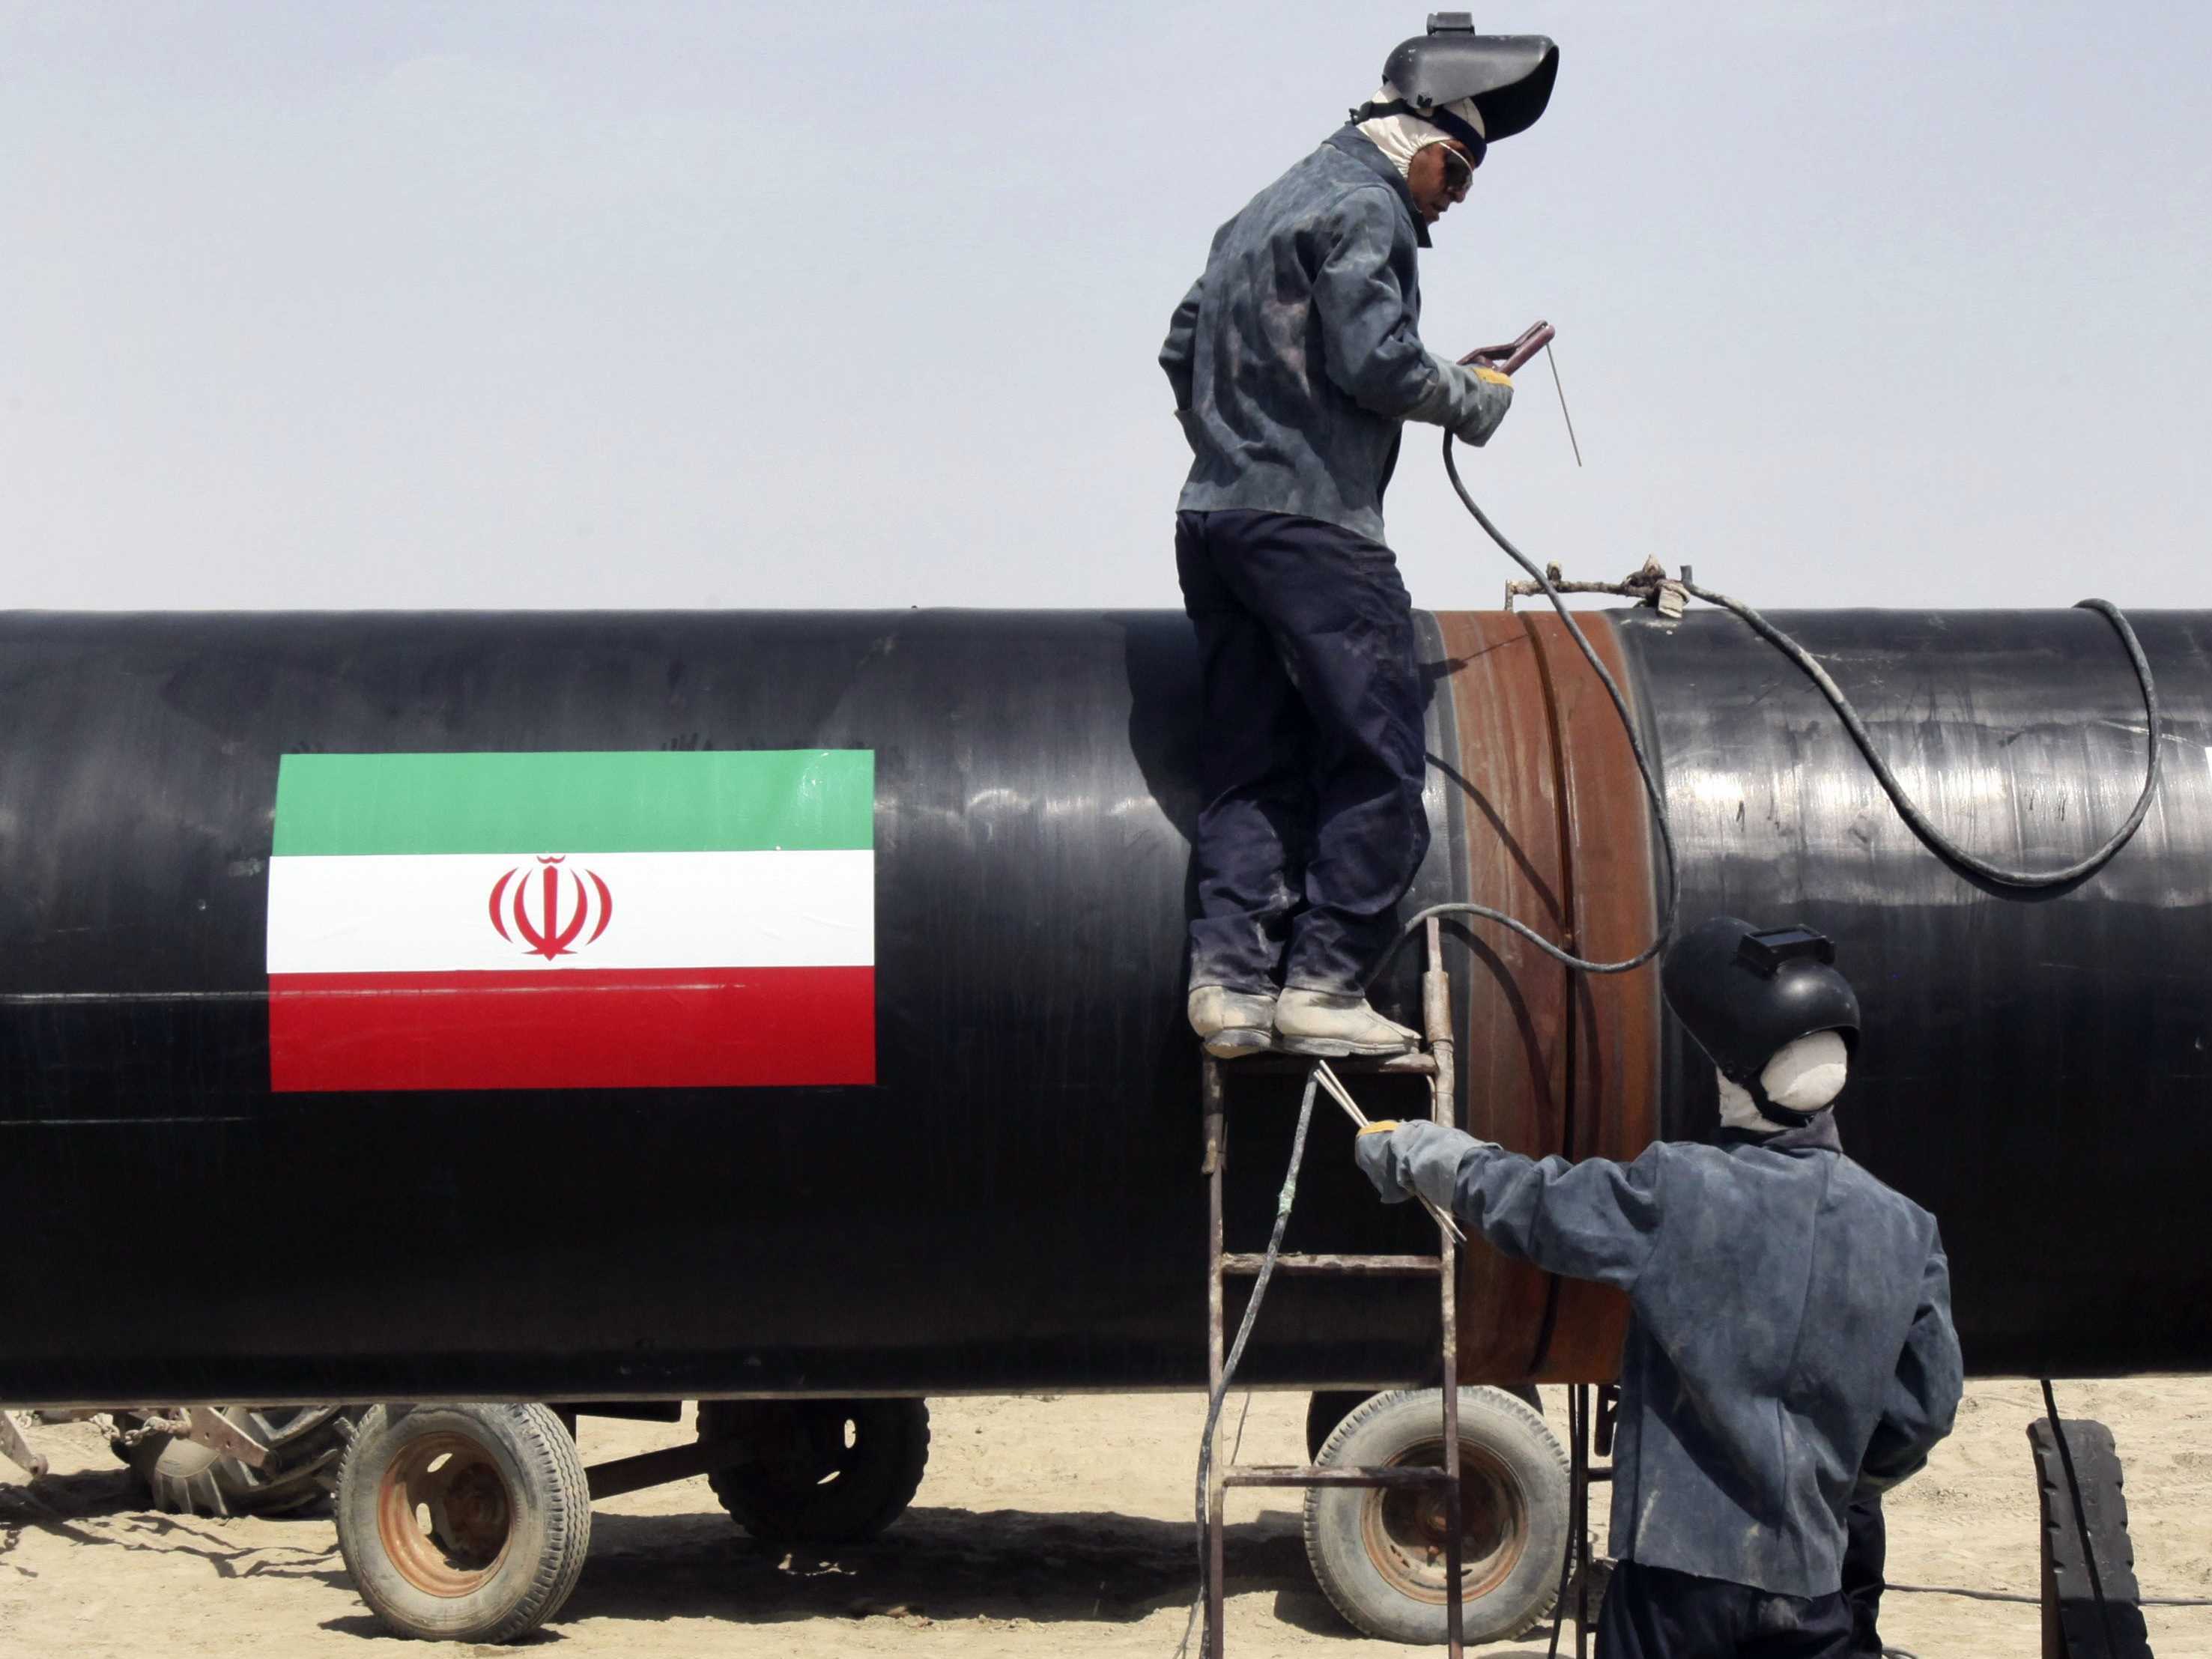 芯片 反美斗士倒下，时隔30年再买伊朗石油，美国的拉拢策略起效了？